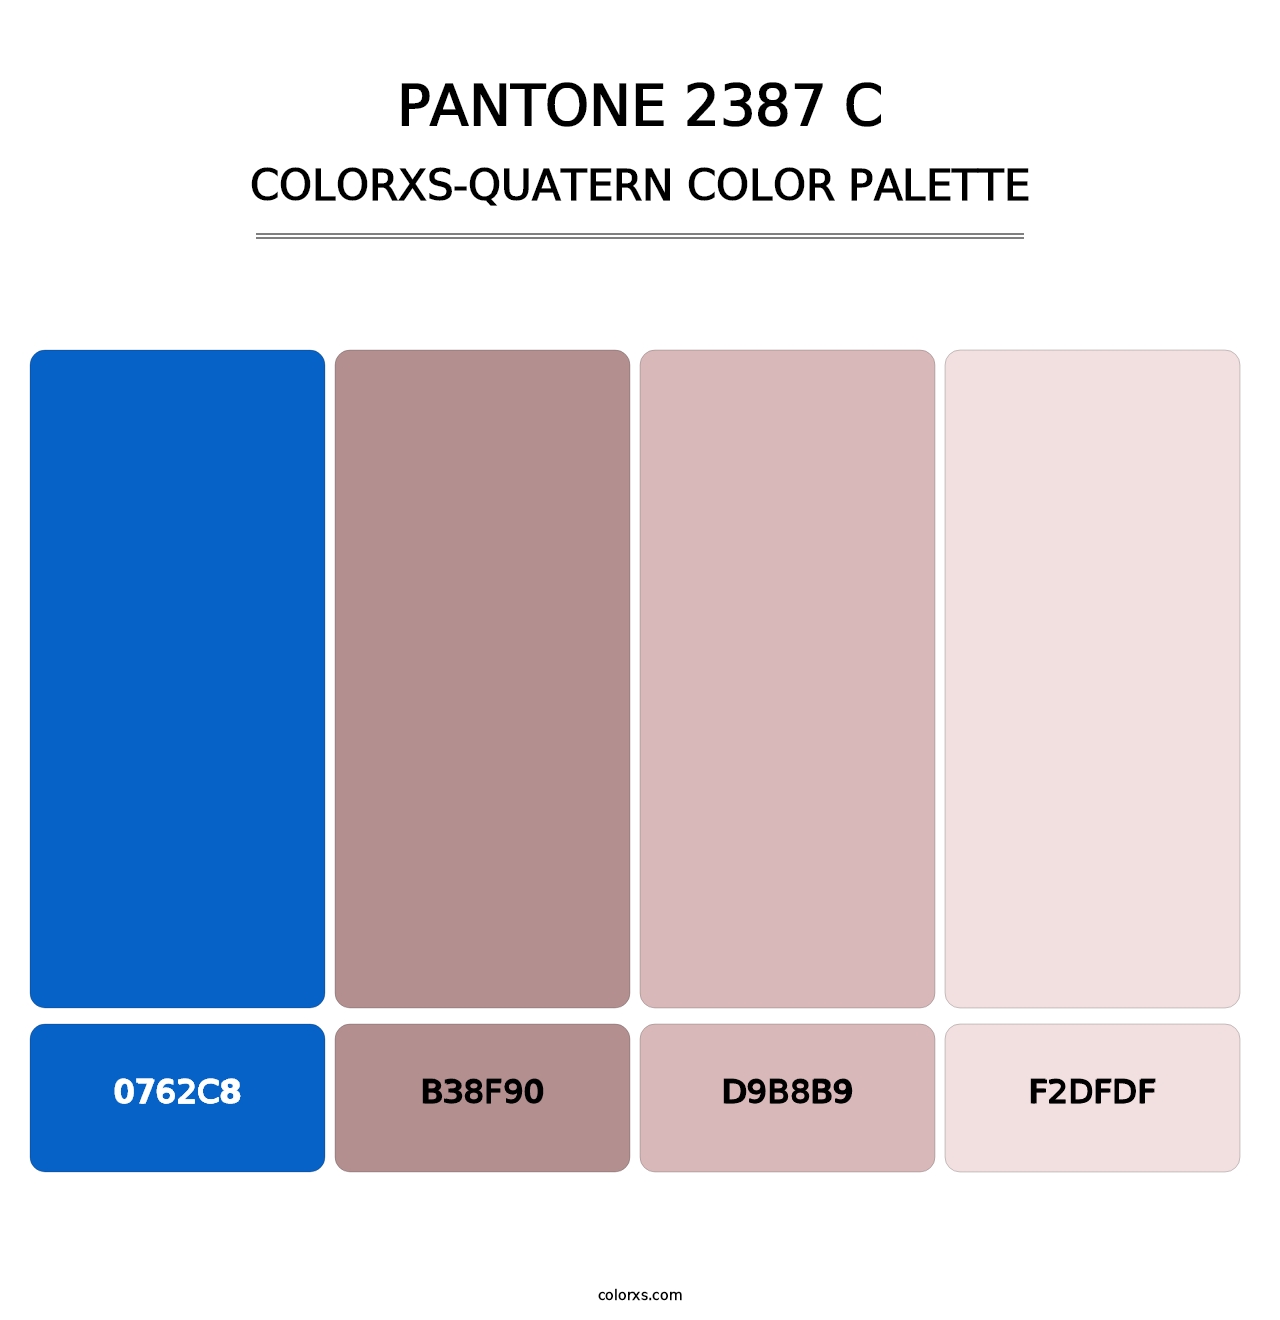 PANTONE 2387 C - Colorxs Quatern Palette